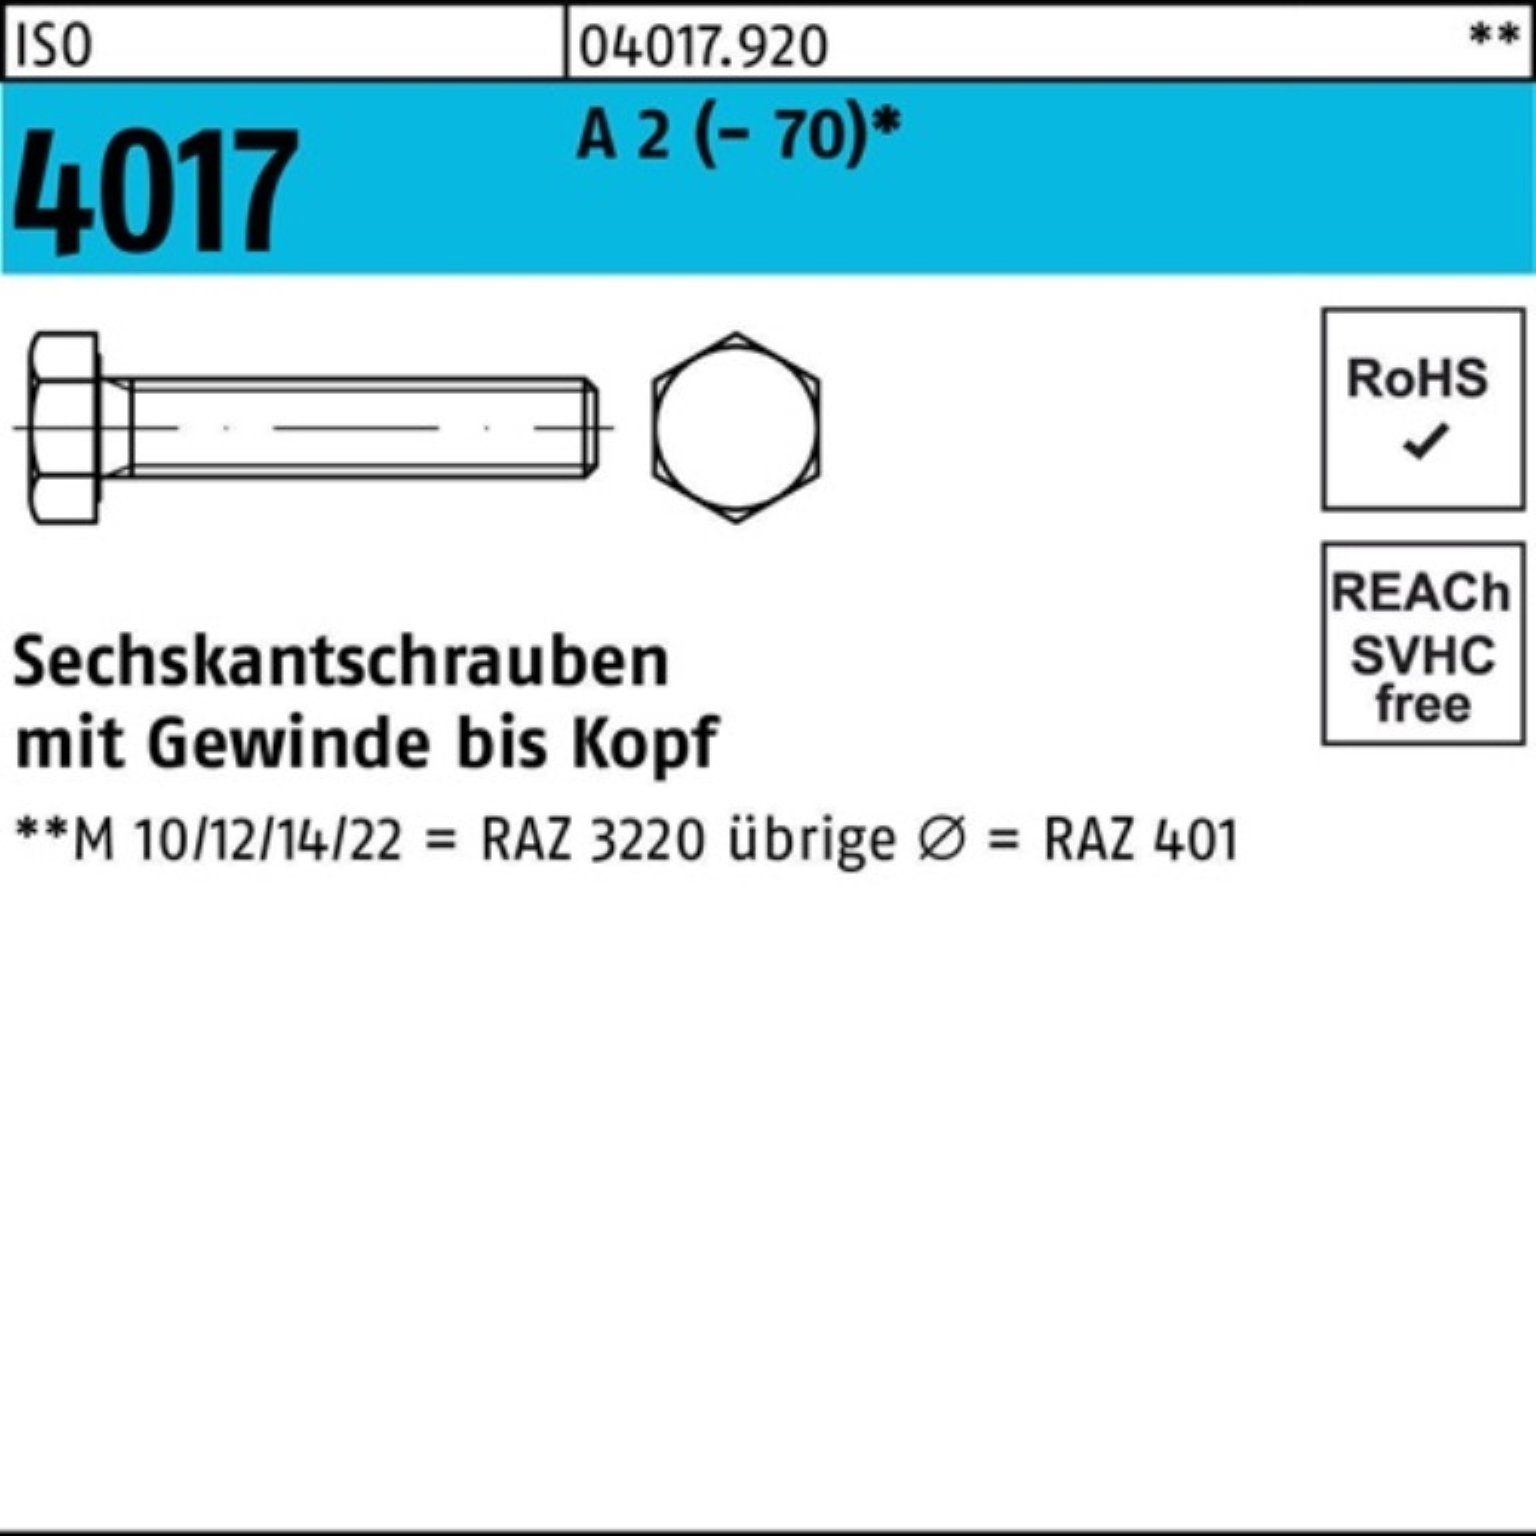 Bufab Sechskantschraube 500er Pack Sechskantschraube ISO 4017 VG M5x 16 A 2 (70) 500 Stück